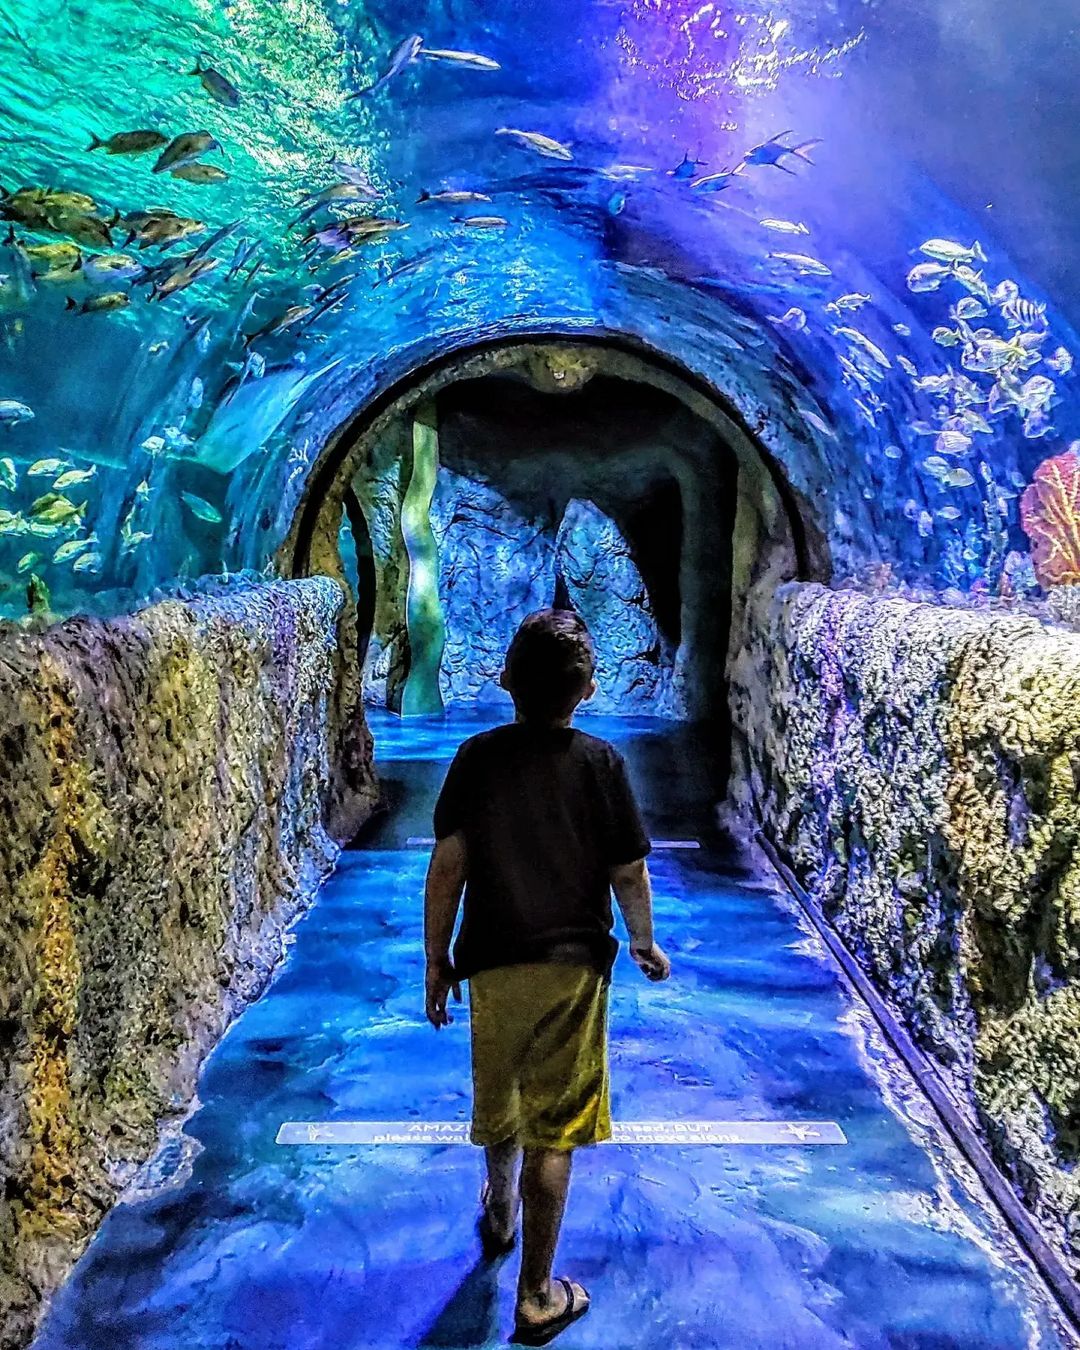 Acuario Sea Life - Icon Park Orlando